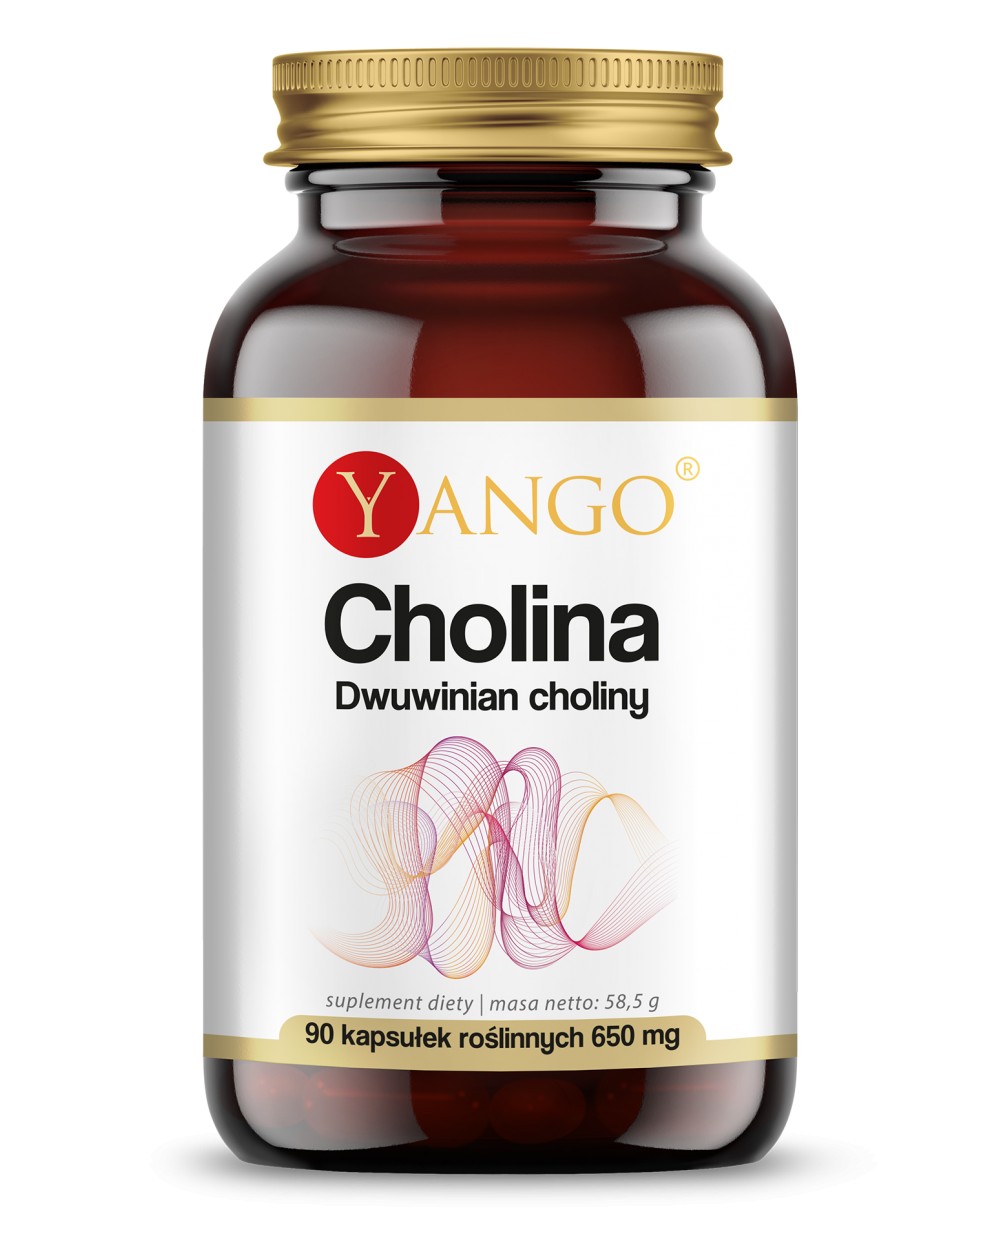 Cholina - Dwuwinian choliny - 90 kaps.